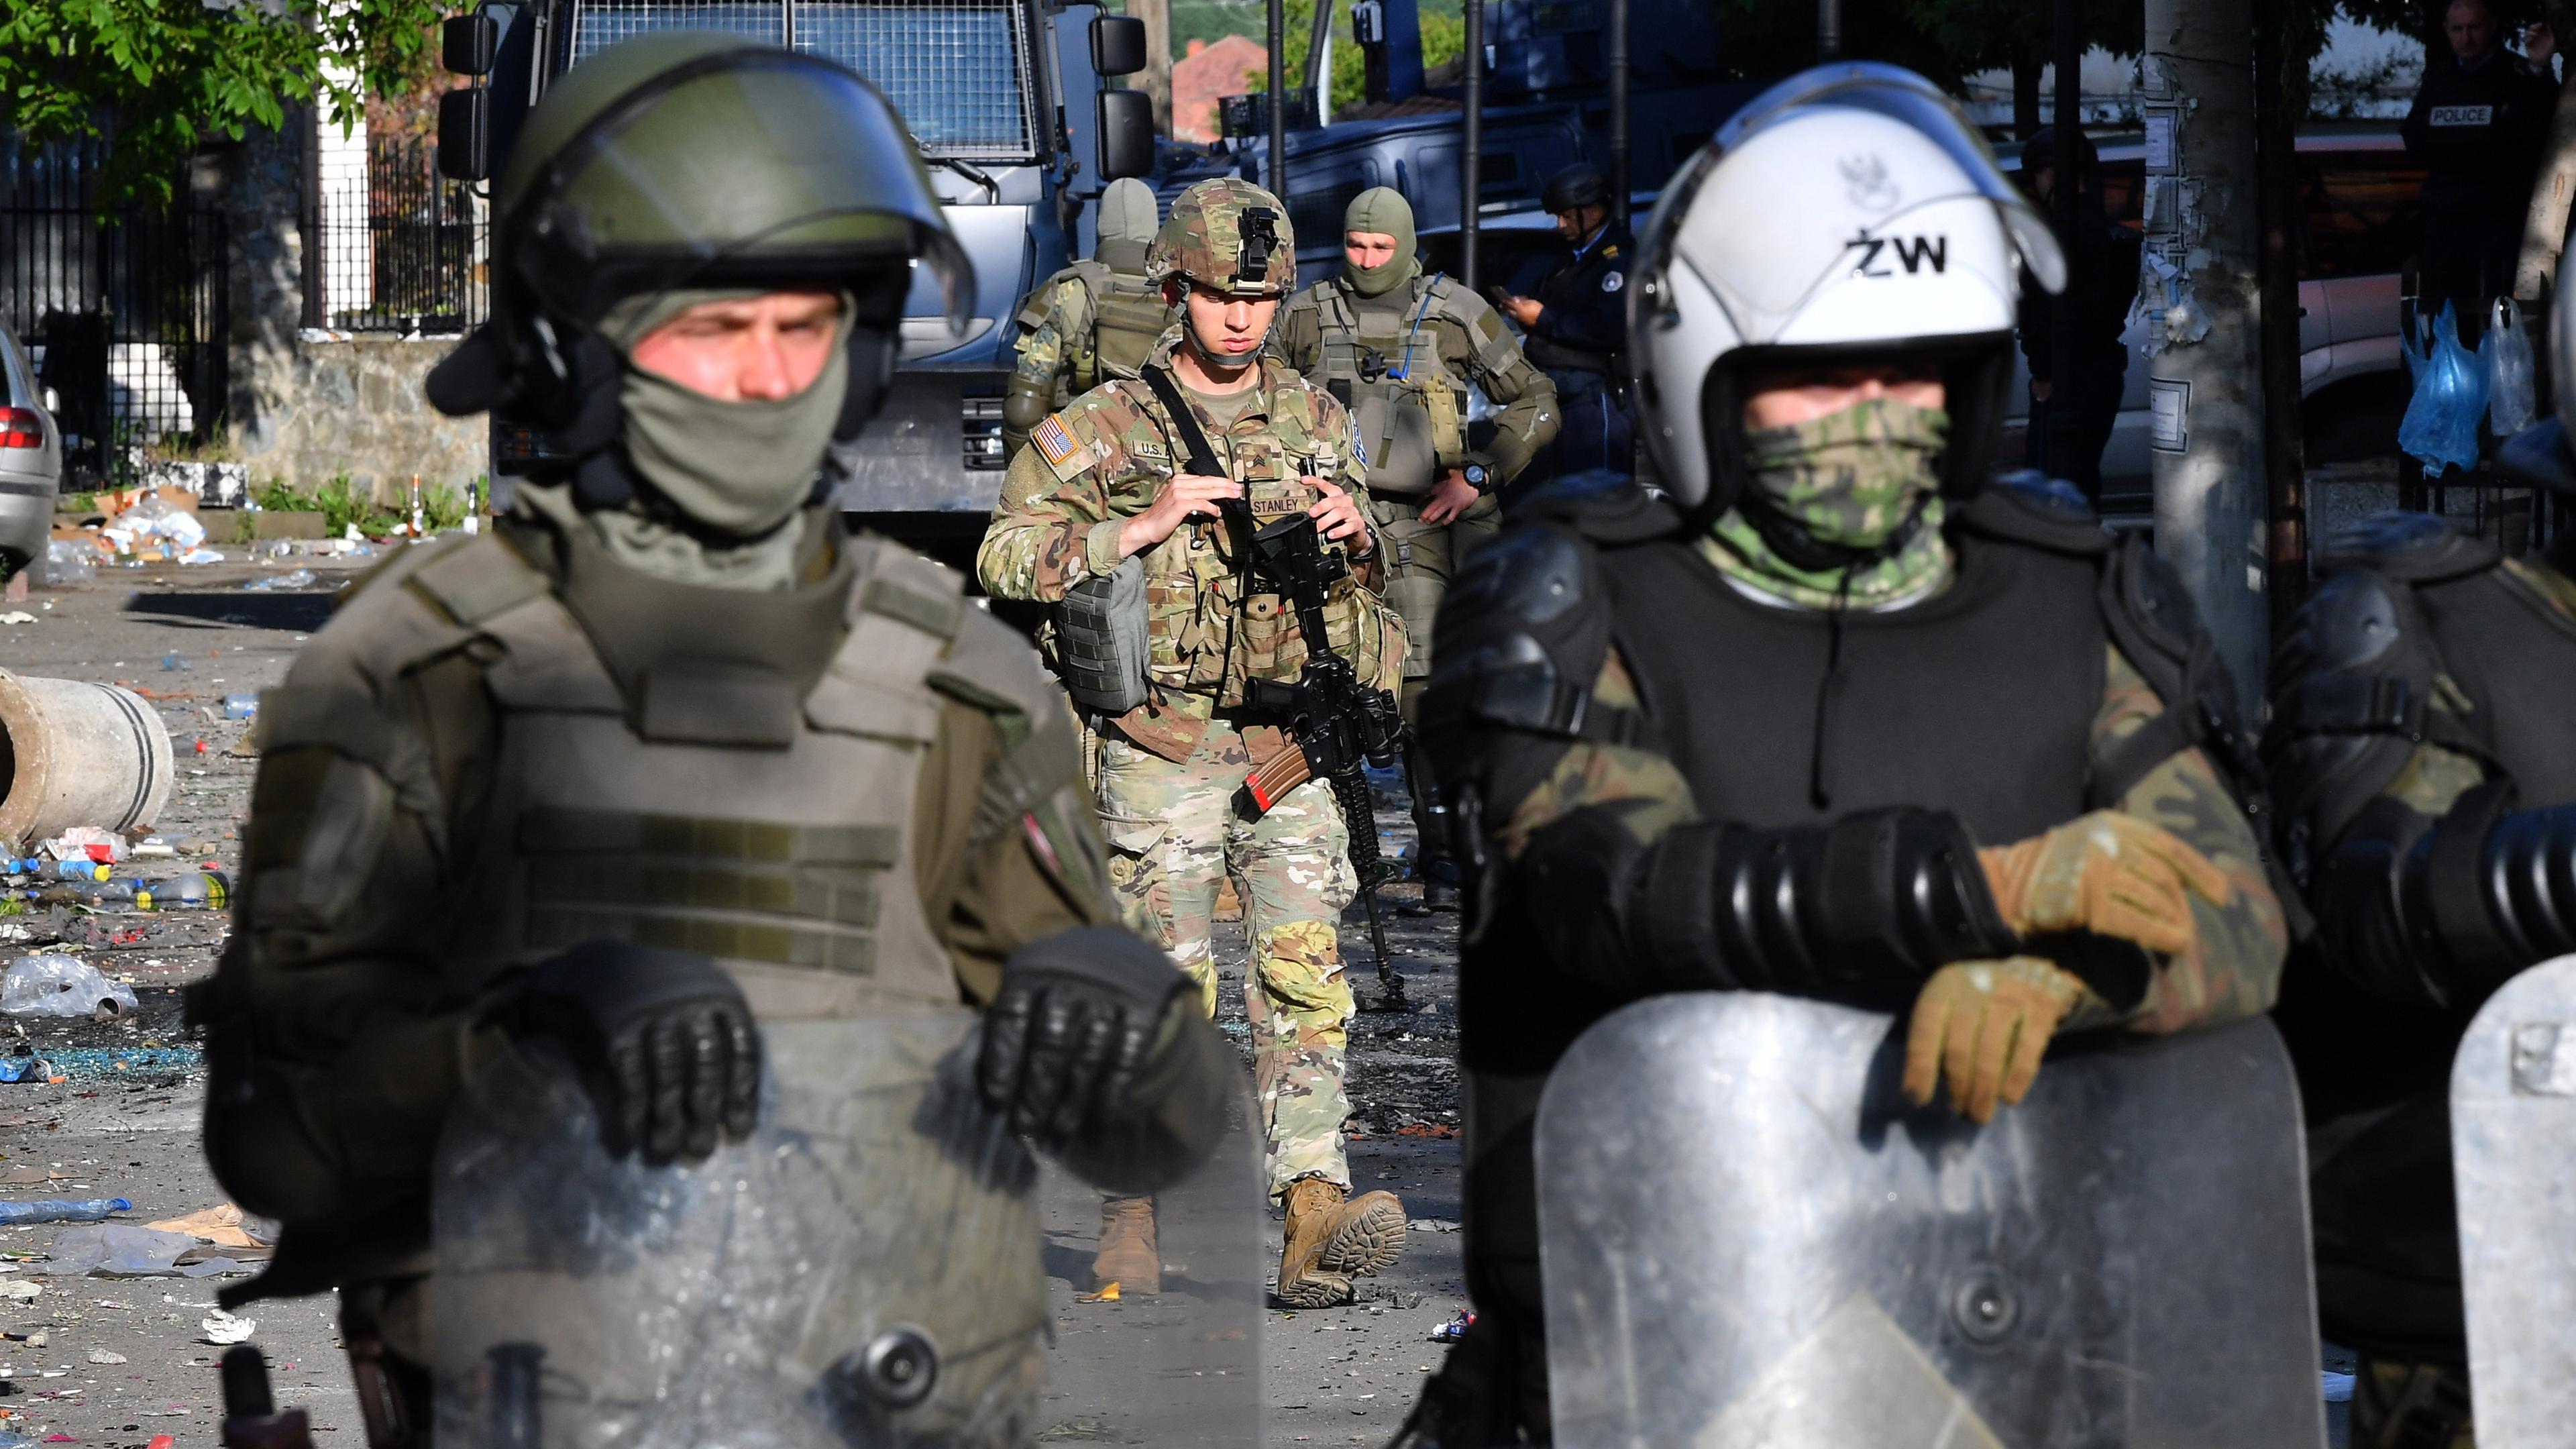 Zu sehen sind Soldaten einer NATO-Friedensmission mit Schutzschildern und schwerer Ausrüstung.